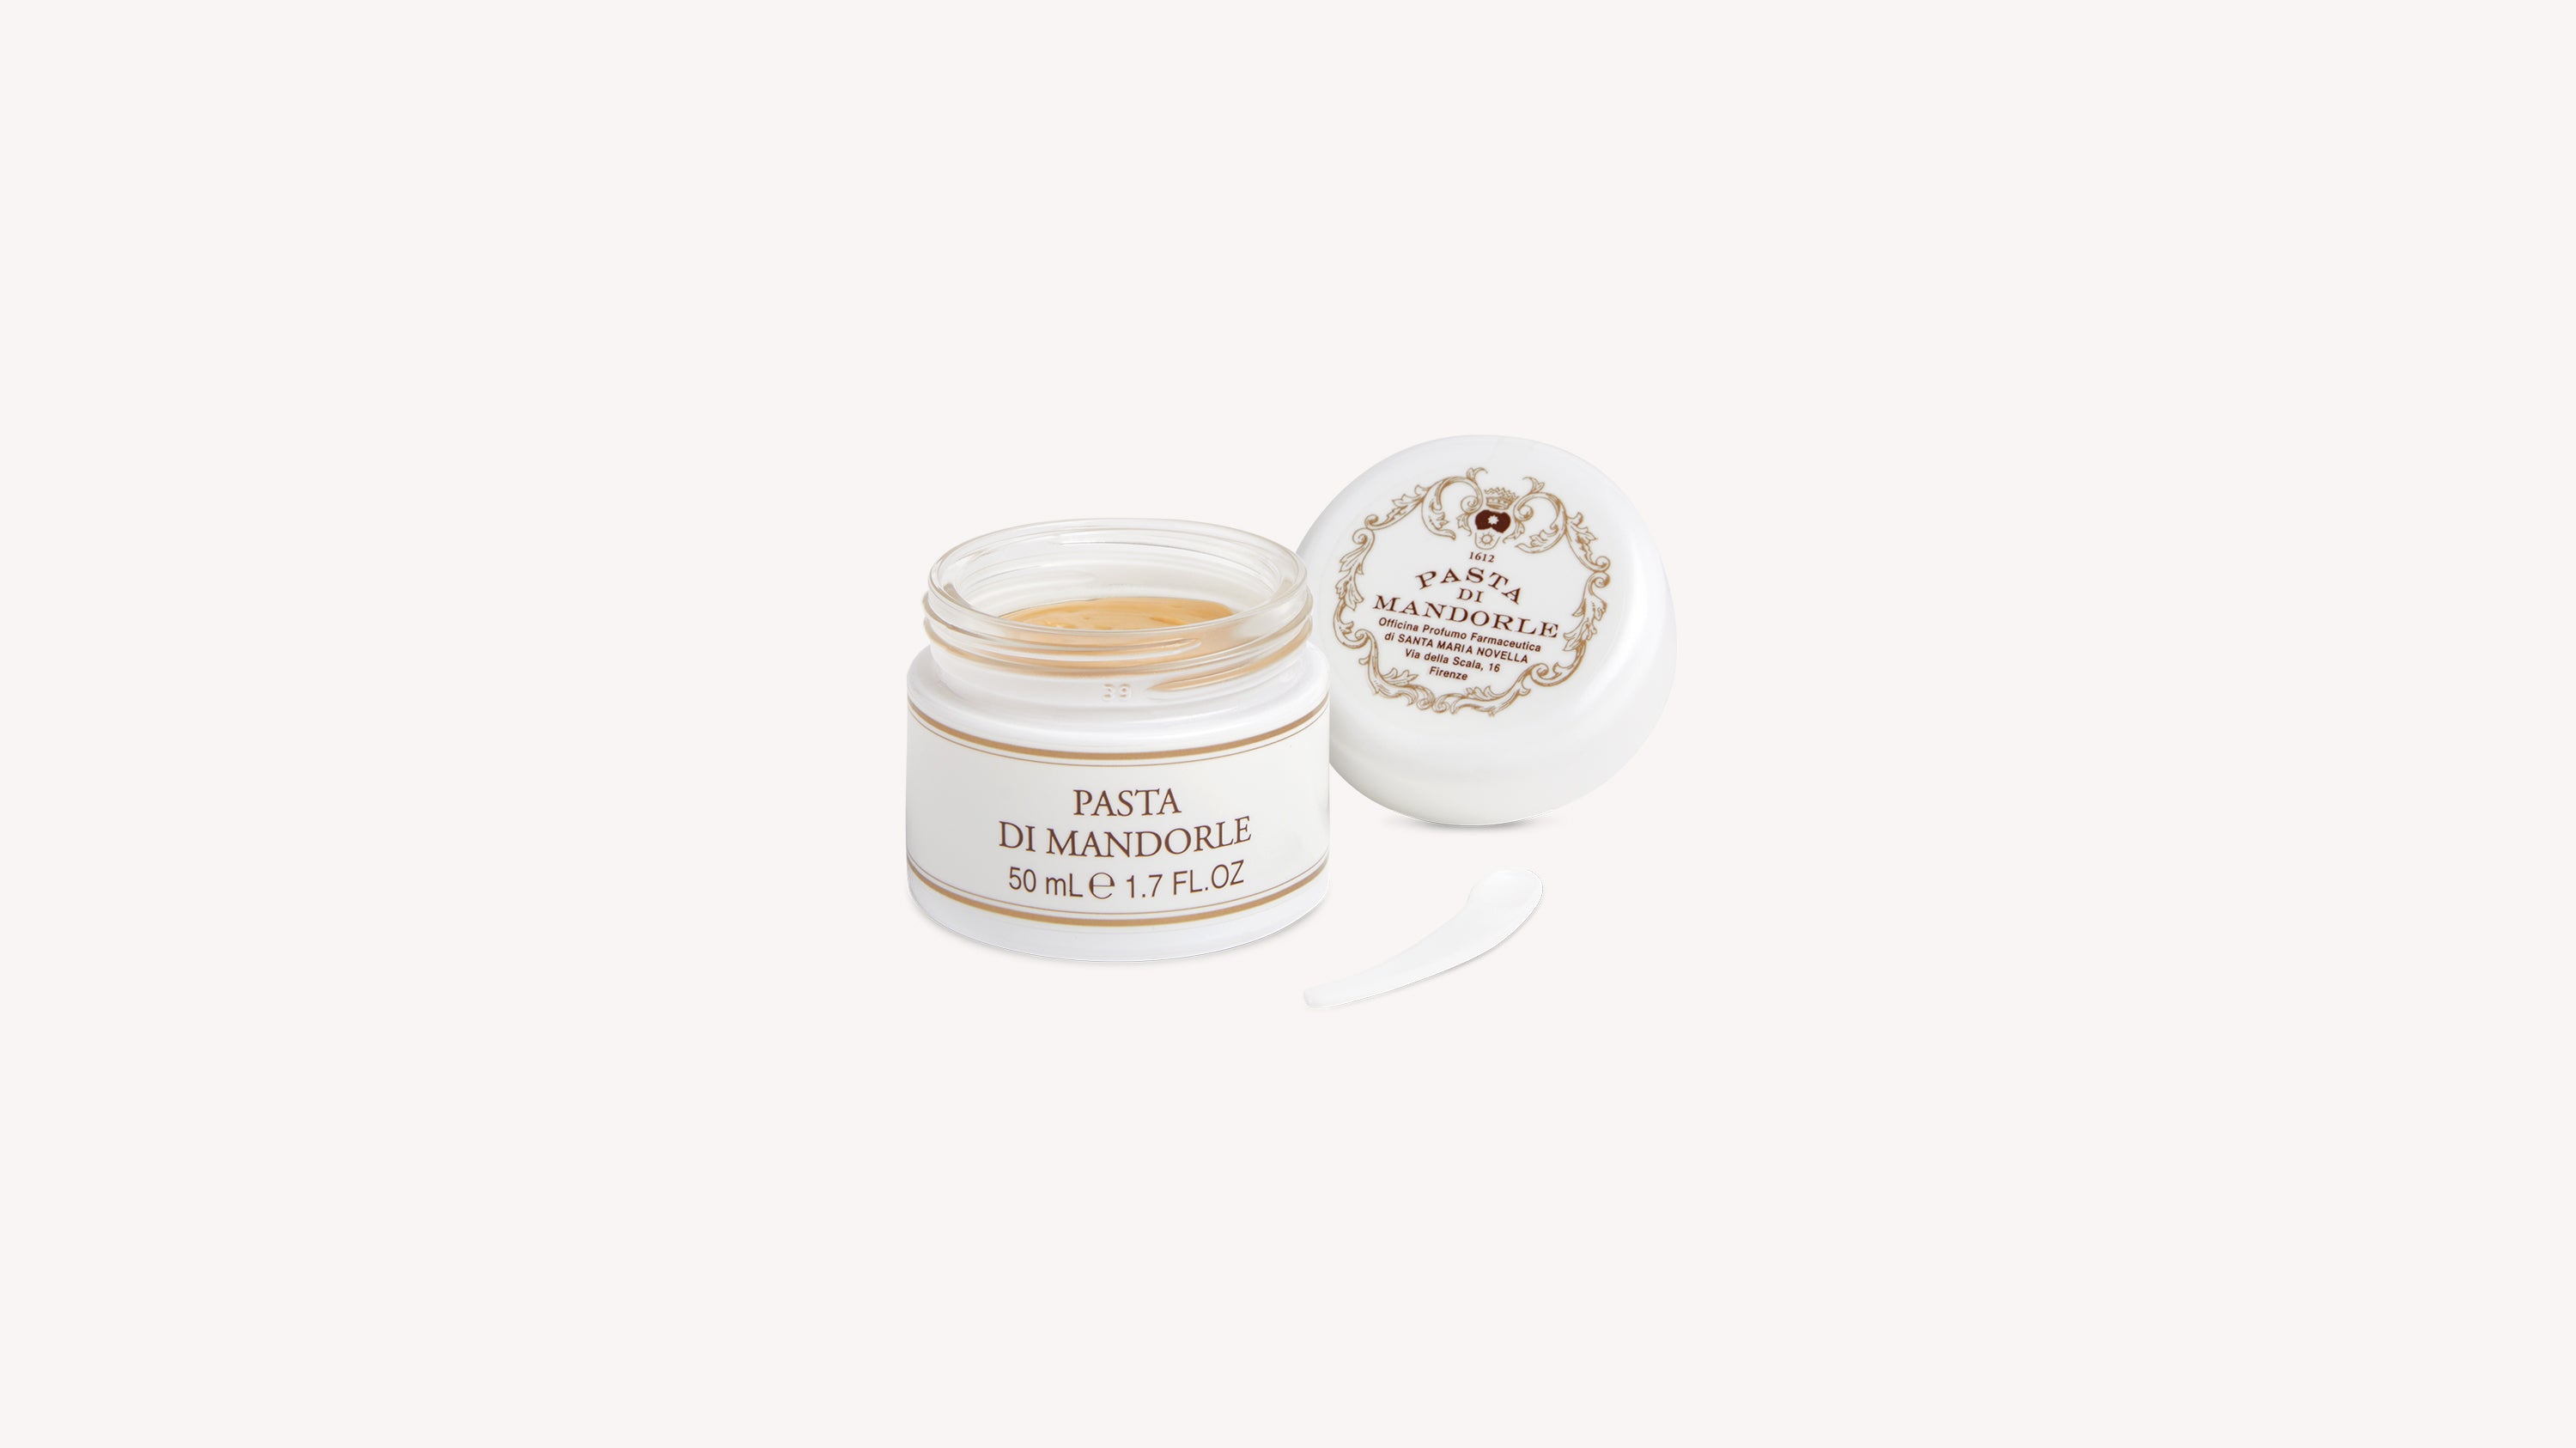 Almond Paste Cream Body Care officina-smn-usa-ca.myshopify.com Officina Profumo Farmaceutica di Santa Maria Novella - US